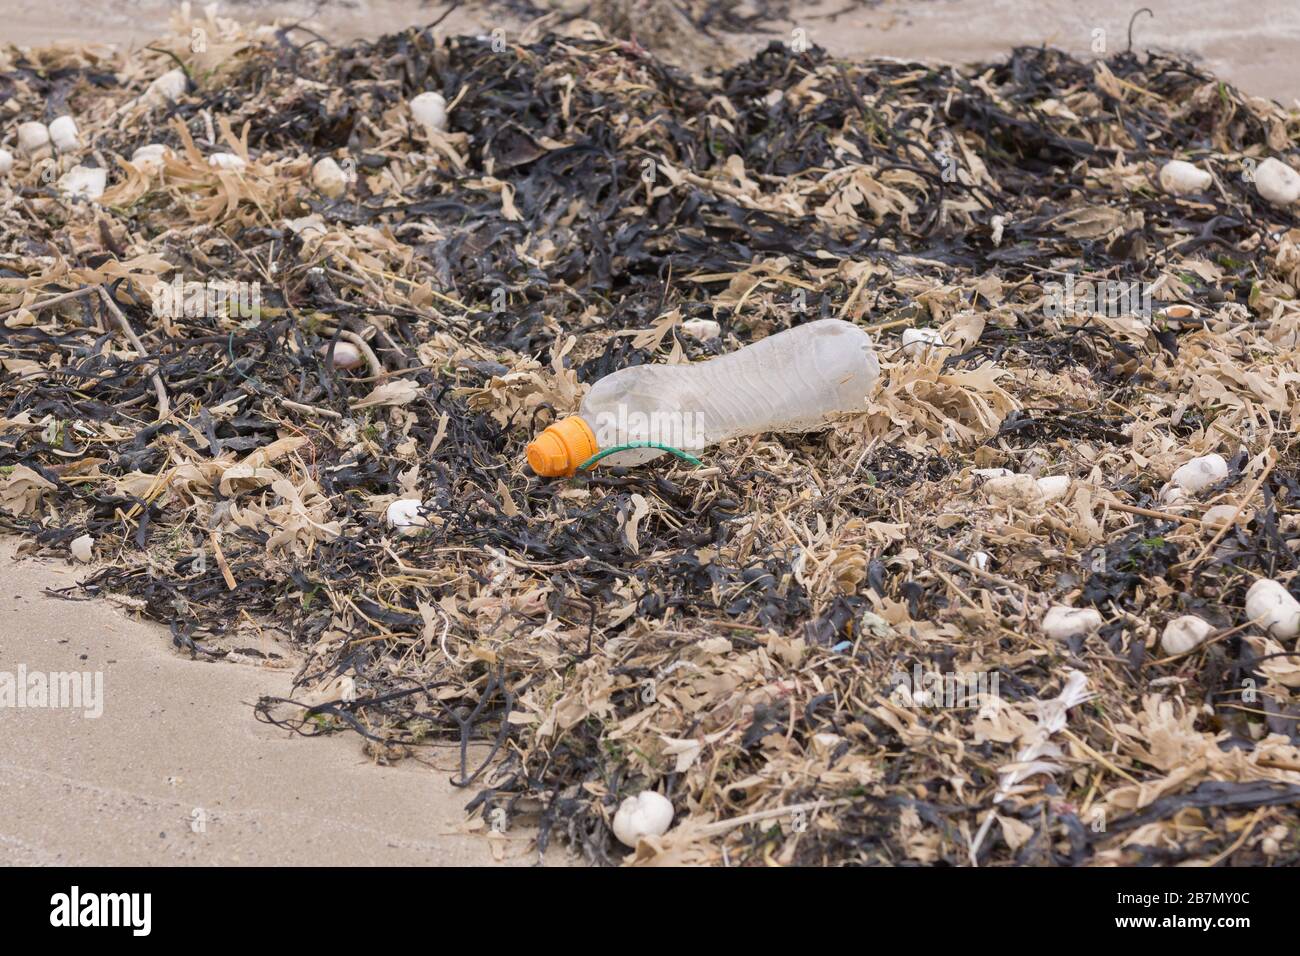 Plastiktrinkflasche umgeben von totem Algen und Muscheln am Strand ein Beispiel für die vielen Müllstücke im Meer Stockfoto